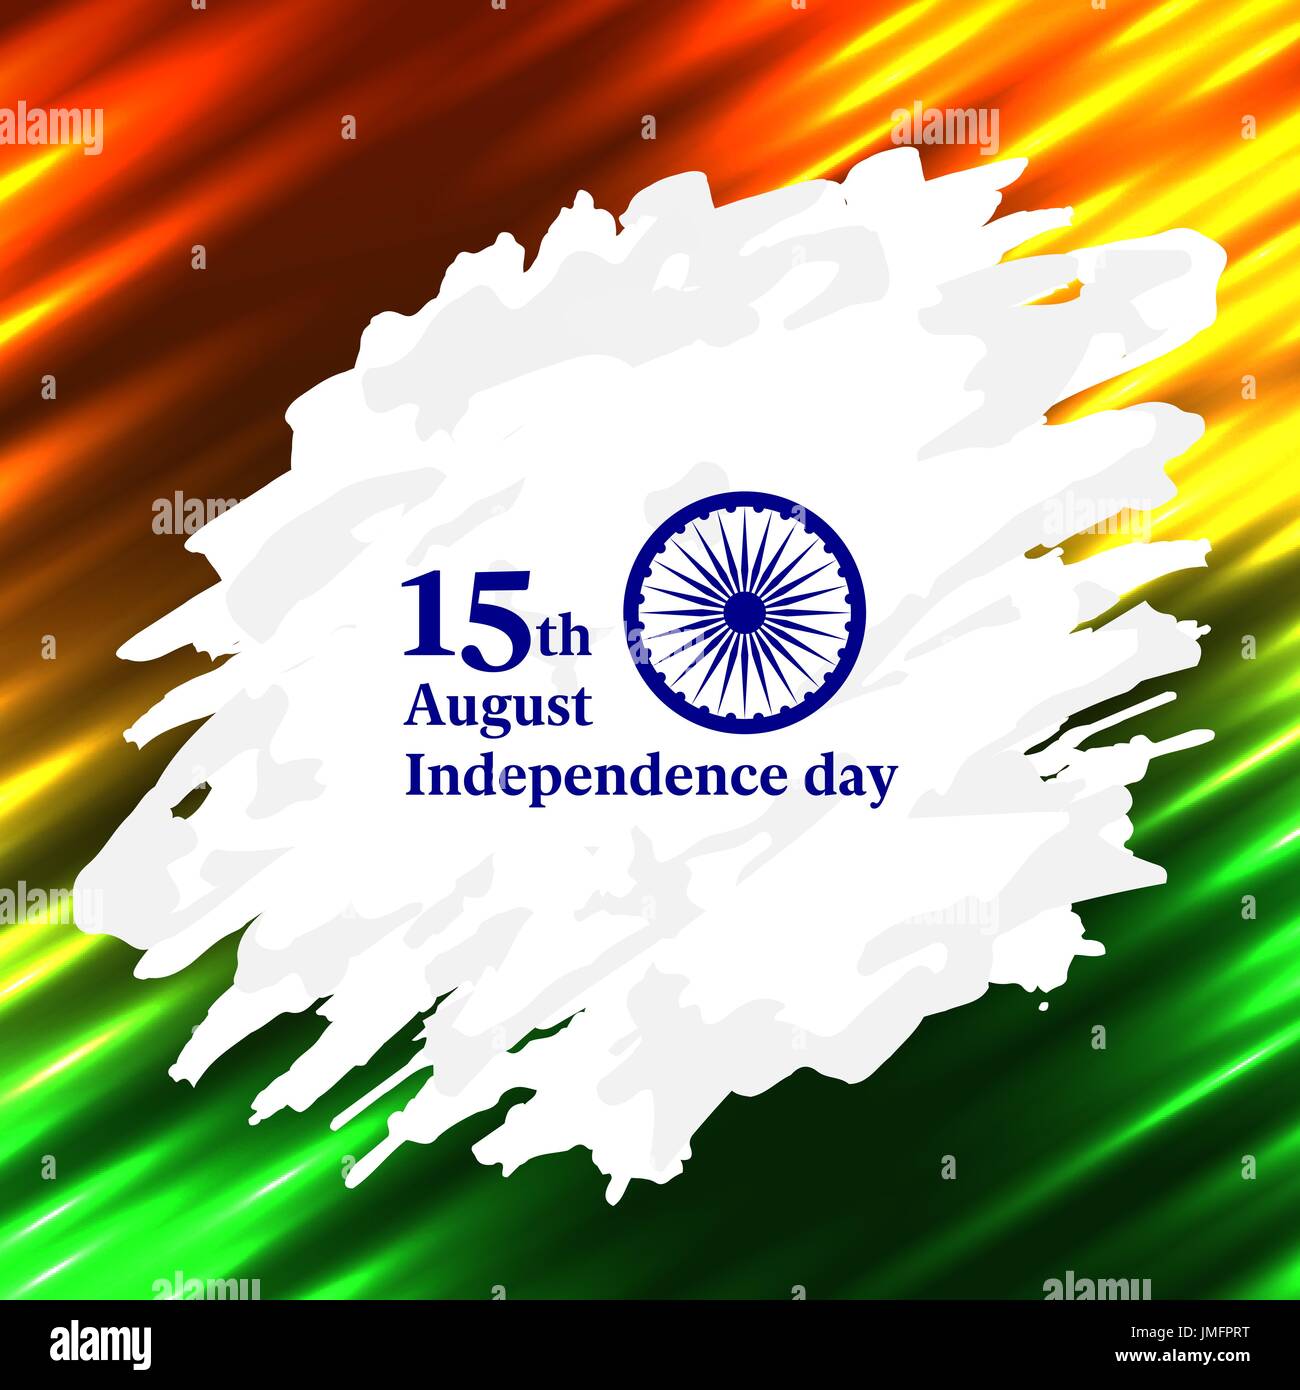 Indian Independence Day concept background: Lễ kỷ niệm Độc lập của Ấn Độ là một dịp quan trọng đối với người dân nước này. Hãy khám phá các hình nền, đồ họa về chủ đề này để cùng chia sẻ cảm xúc và niềm tự hào với những người bạn và đối tác.